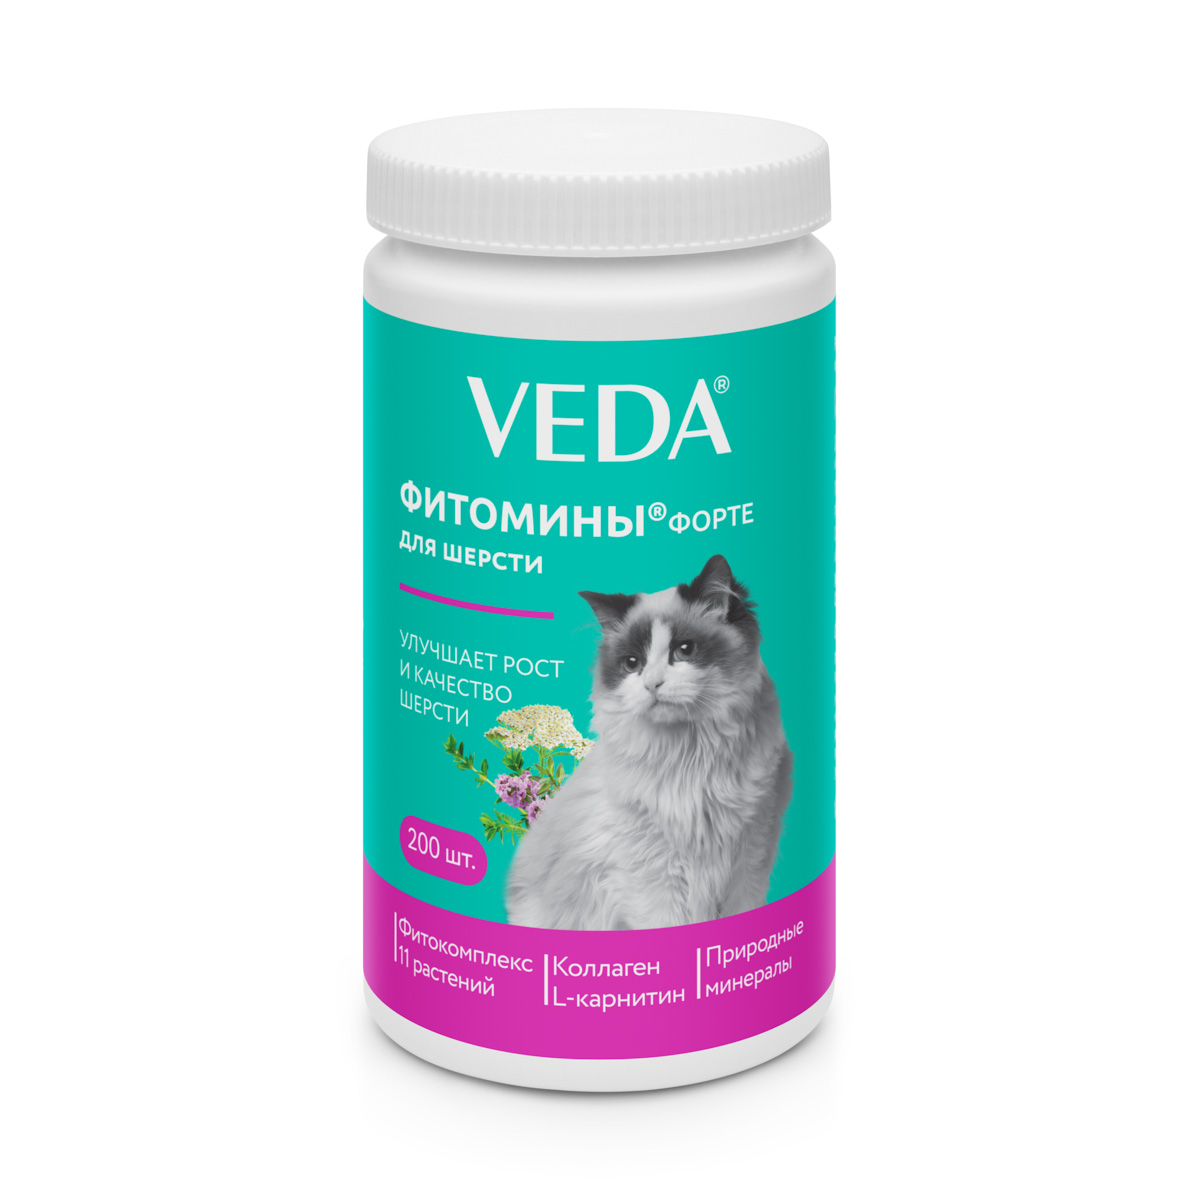 Фитомины VEDA Форте для шерсти для кошек 200 шт